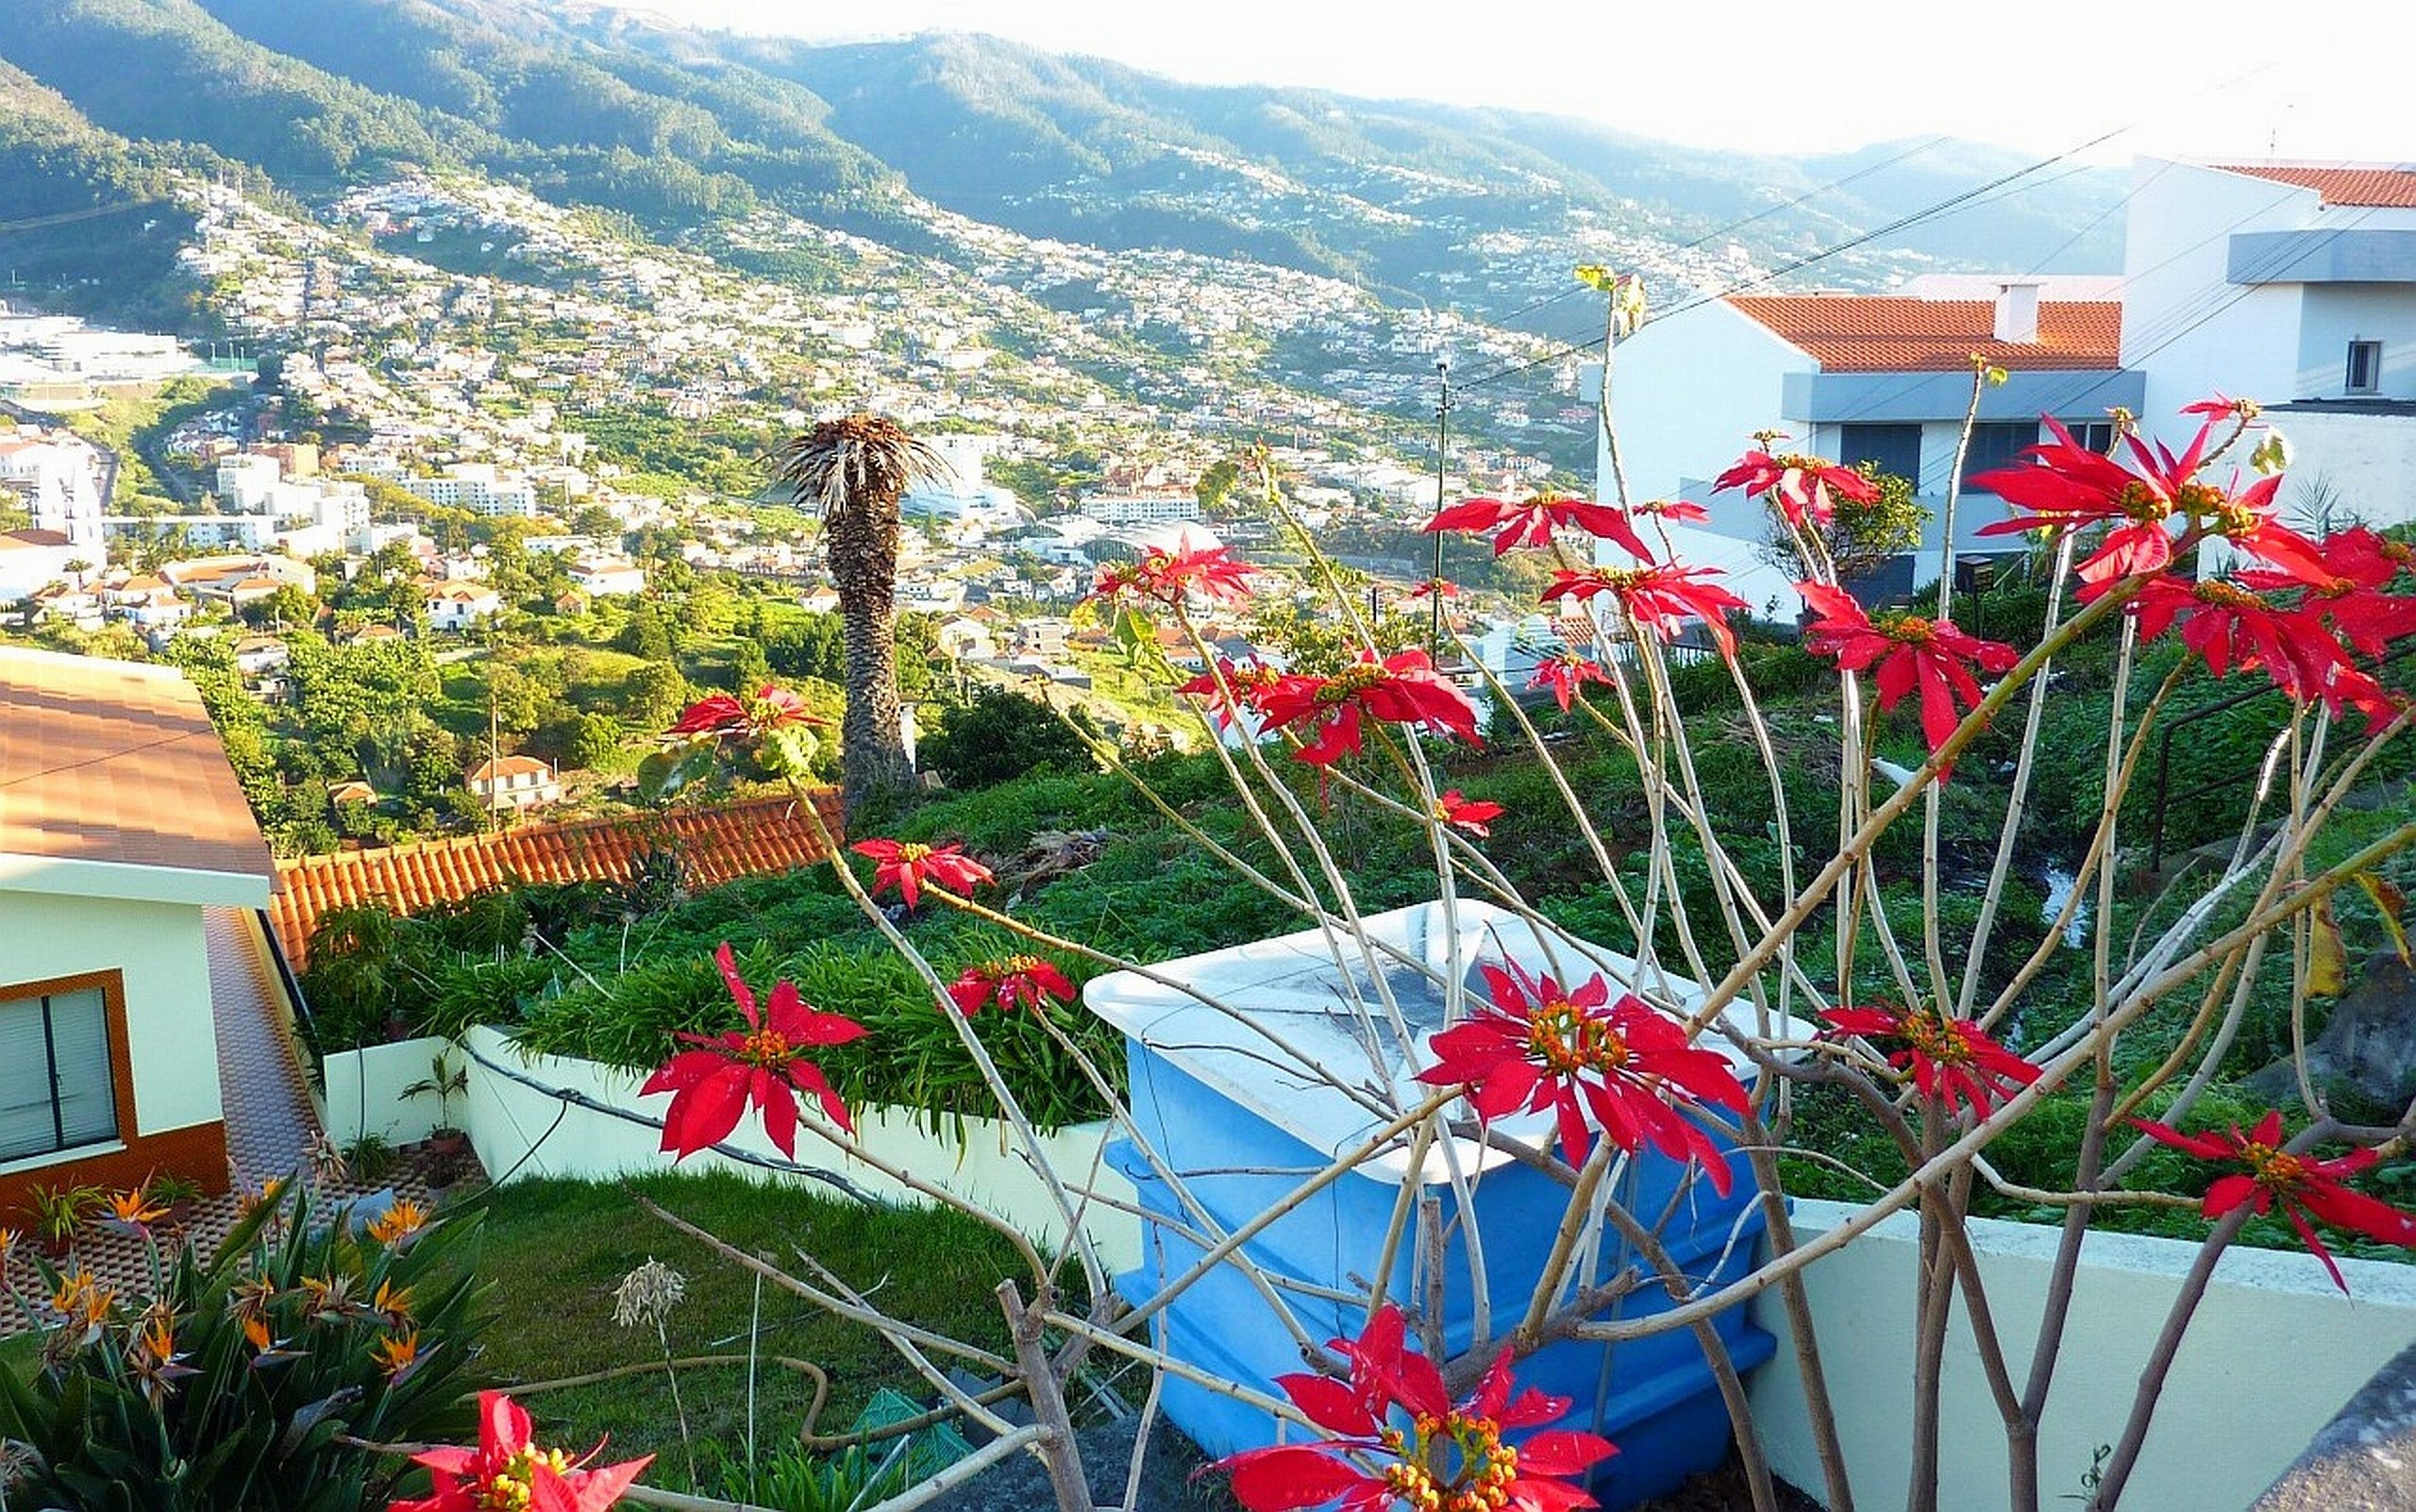 Madeira travels, HD wallpapers, Desktop mobile backgrounds, Stunning landscapes, 2560x1610 HD Desktop